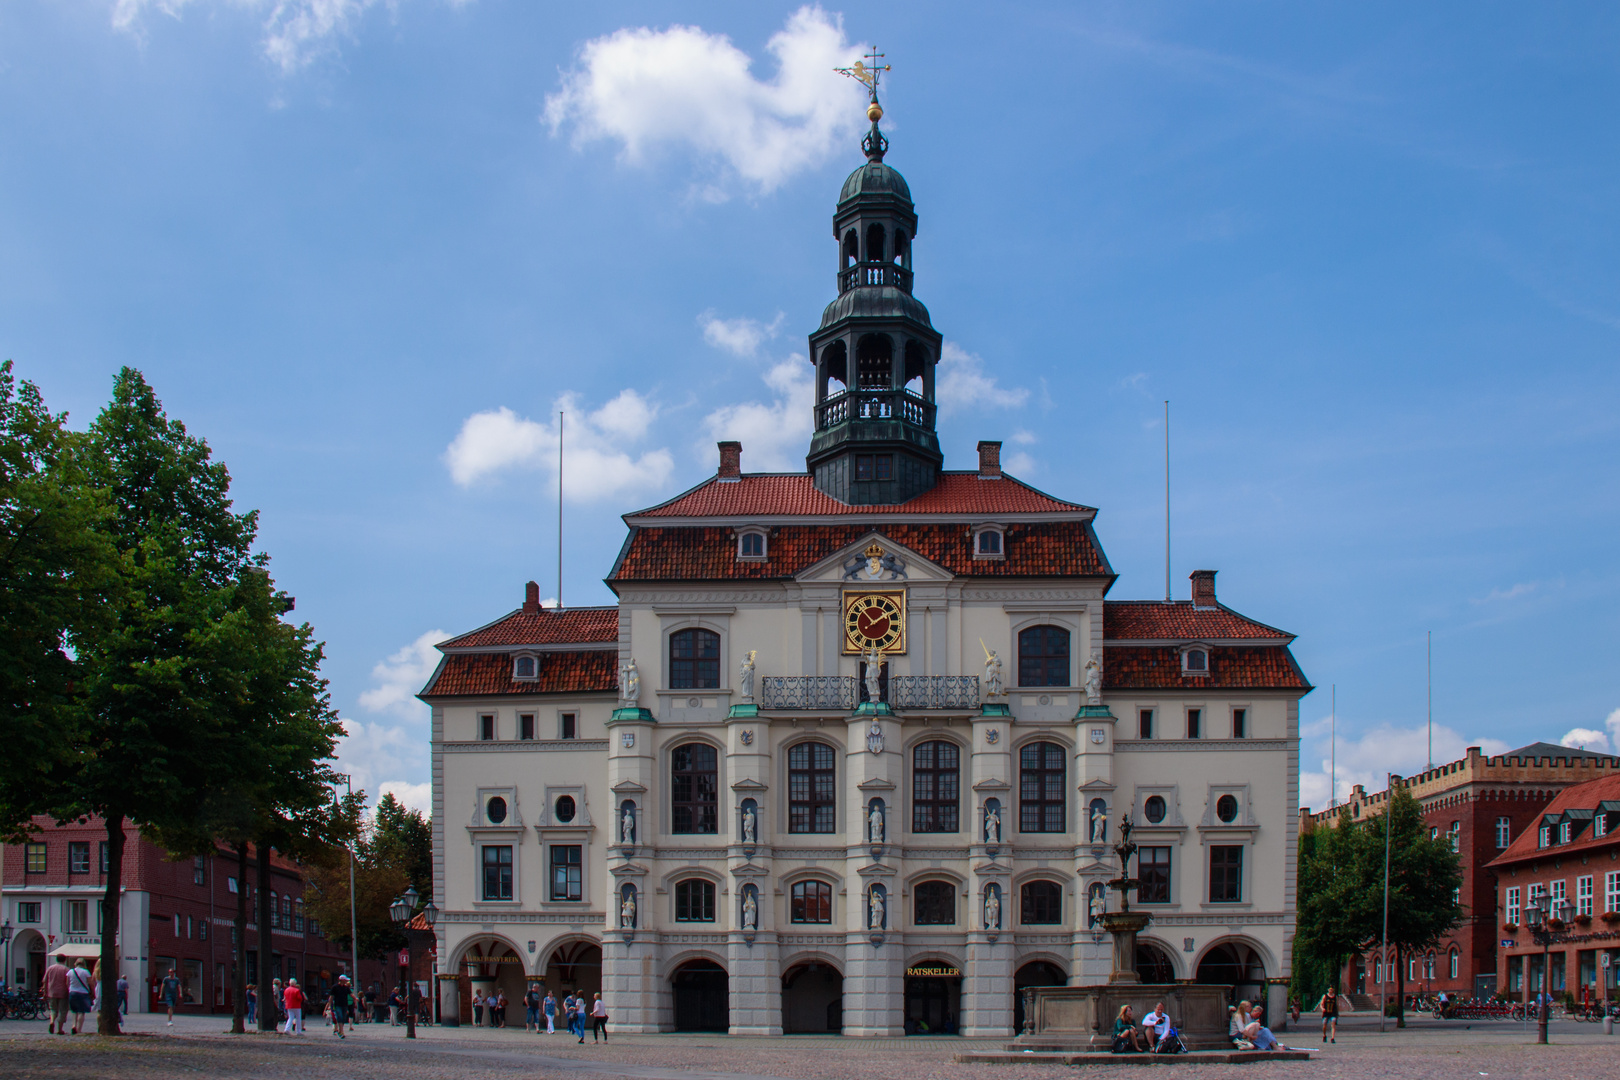 Erholen am Lüneburger Rathaus